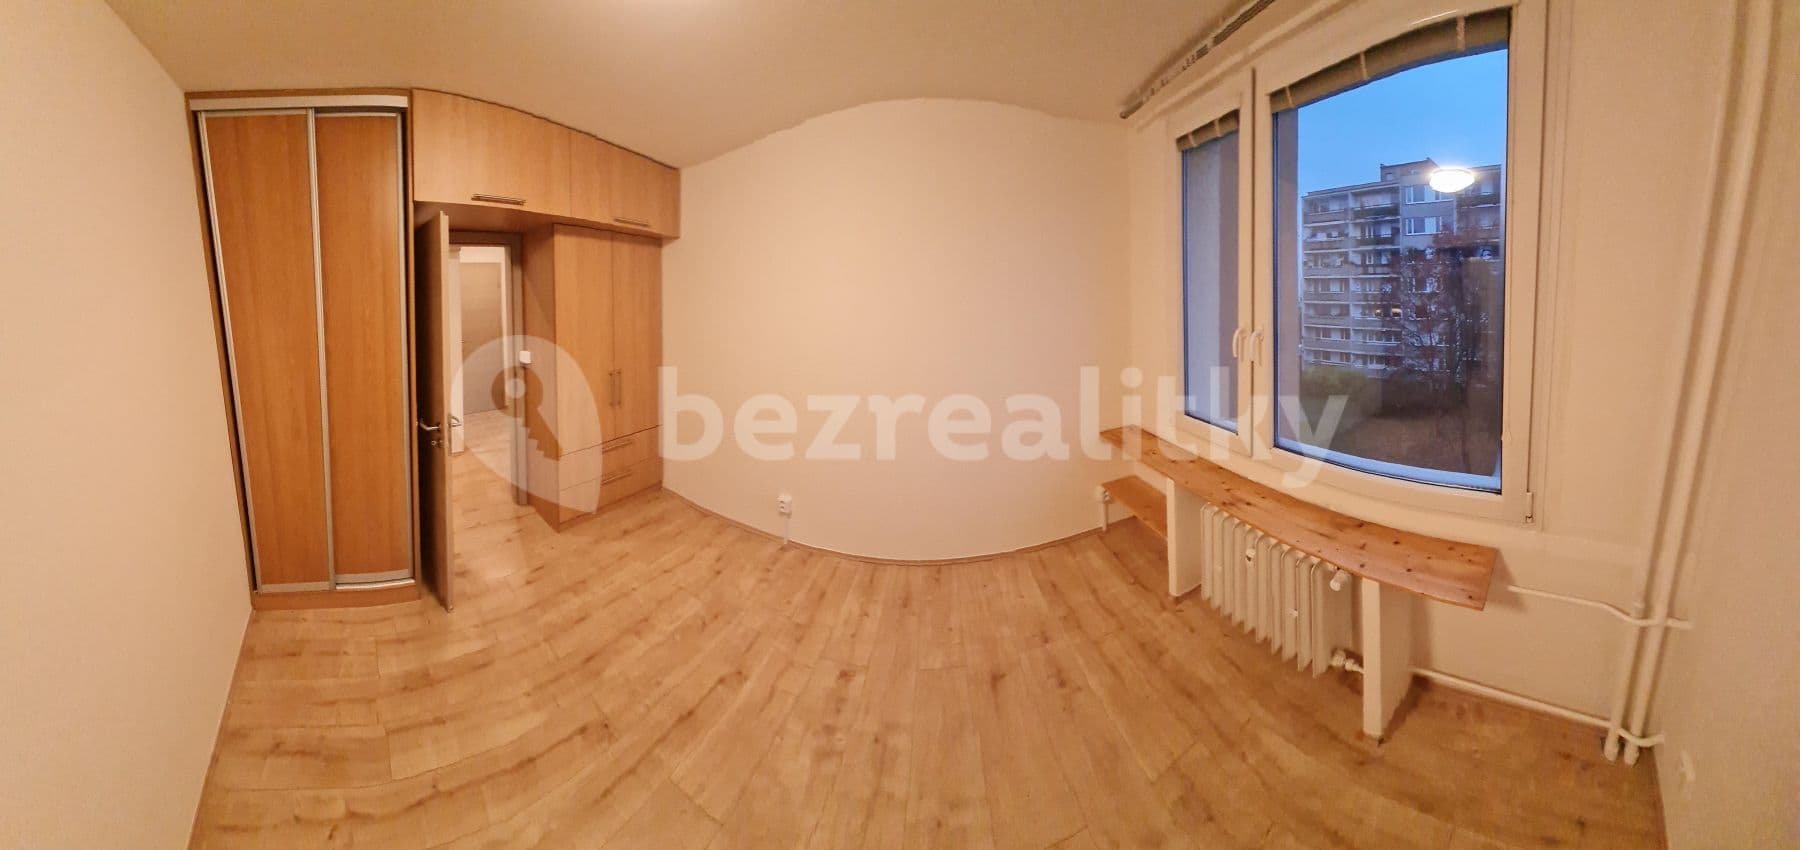 1 bedroom with open-plan kitchen flat to rent, 41 m², V Zápolí, Prague, Prague